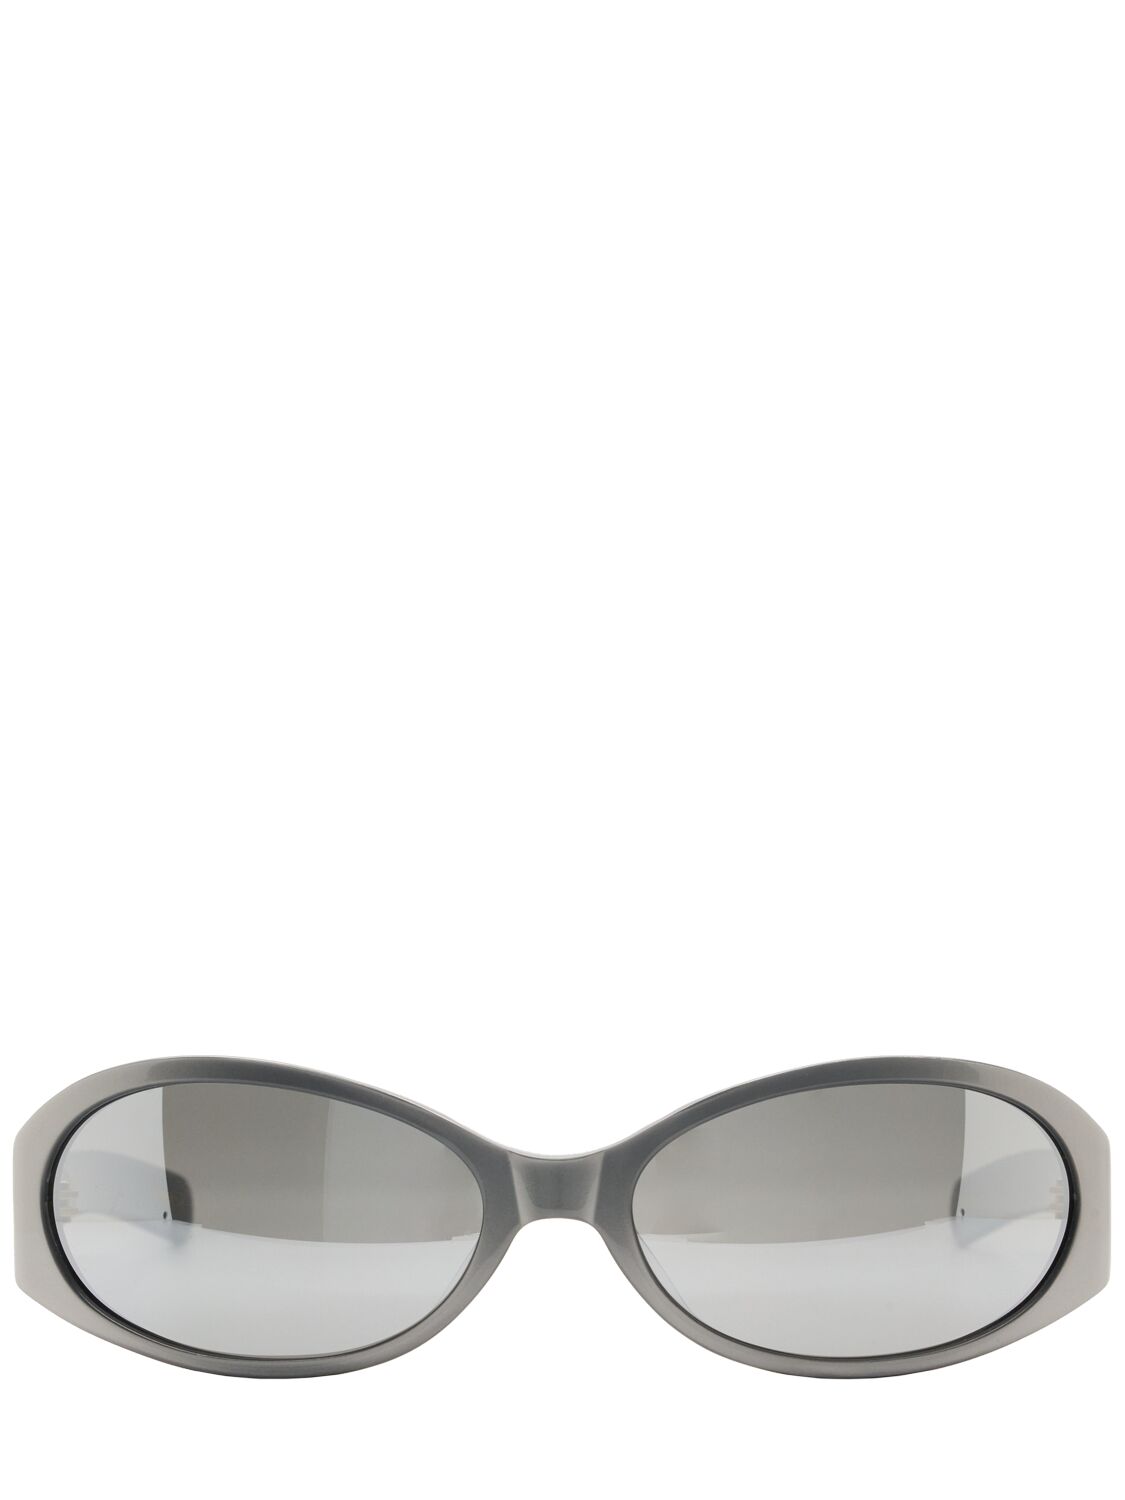 Flatlist Eyewear Office Opel Acetate Sunglasses In Metallic Silver